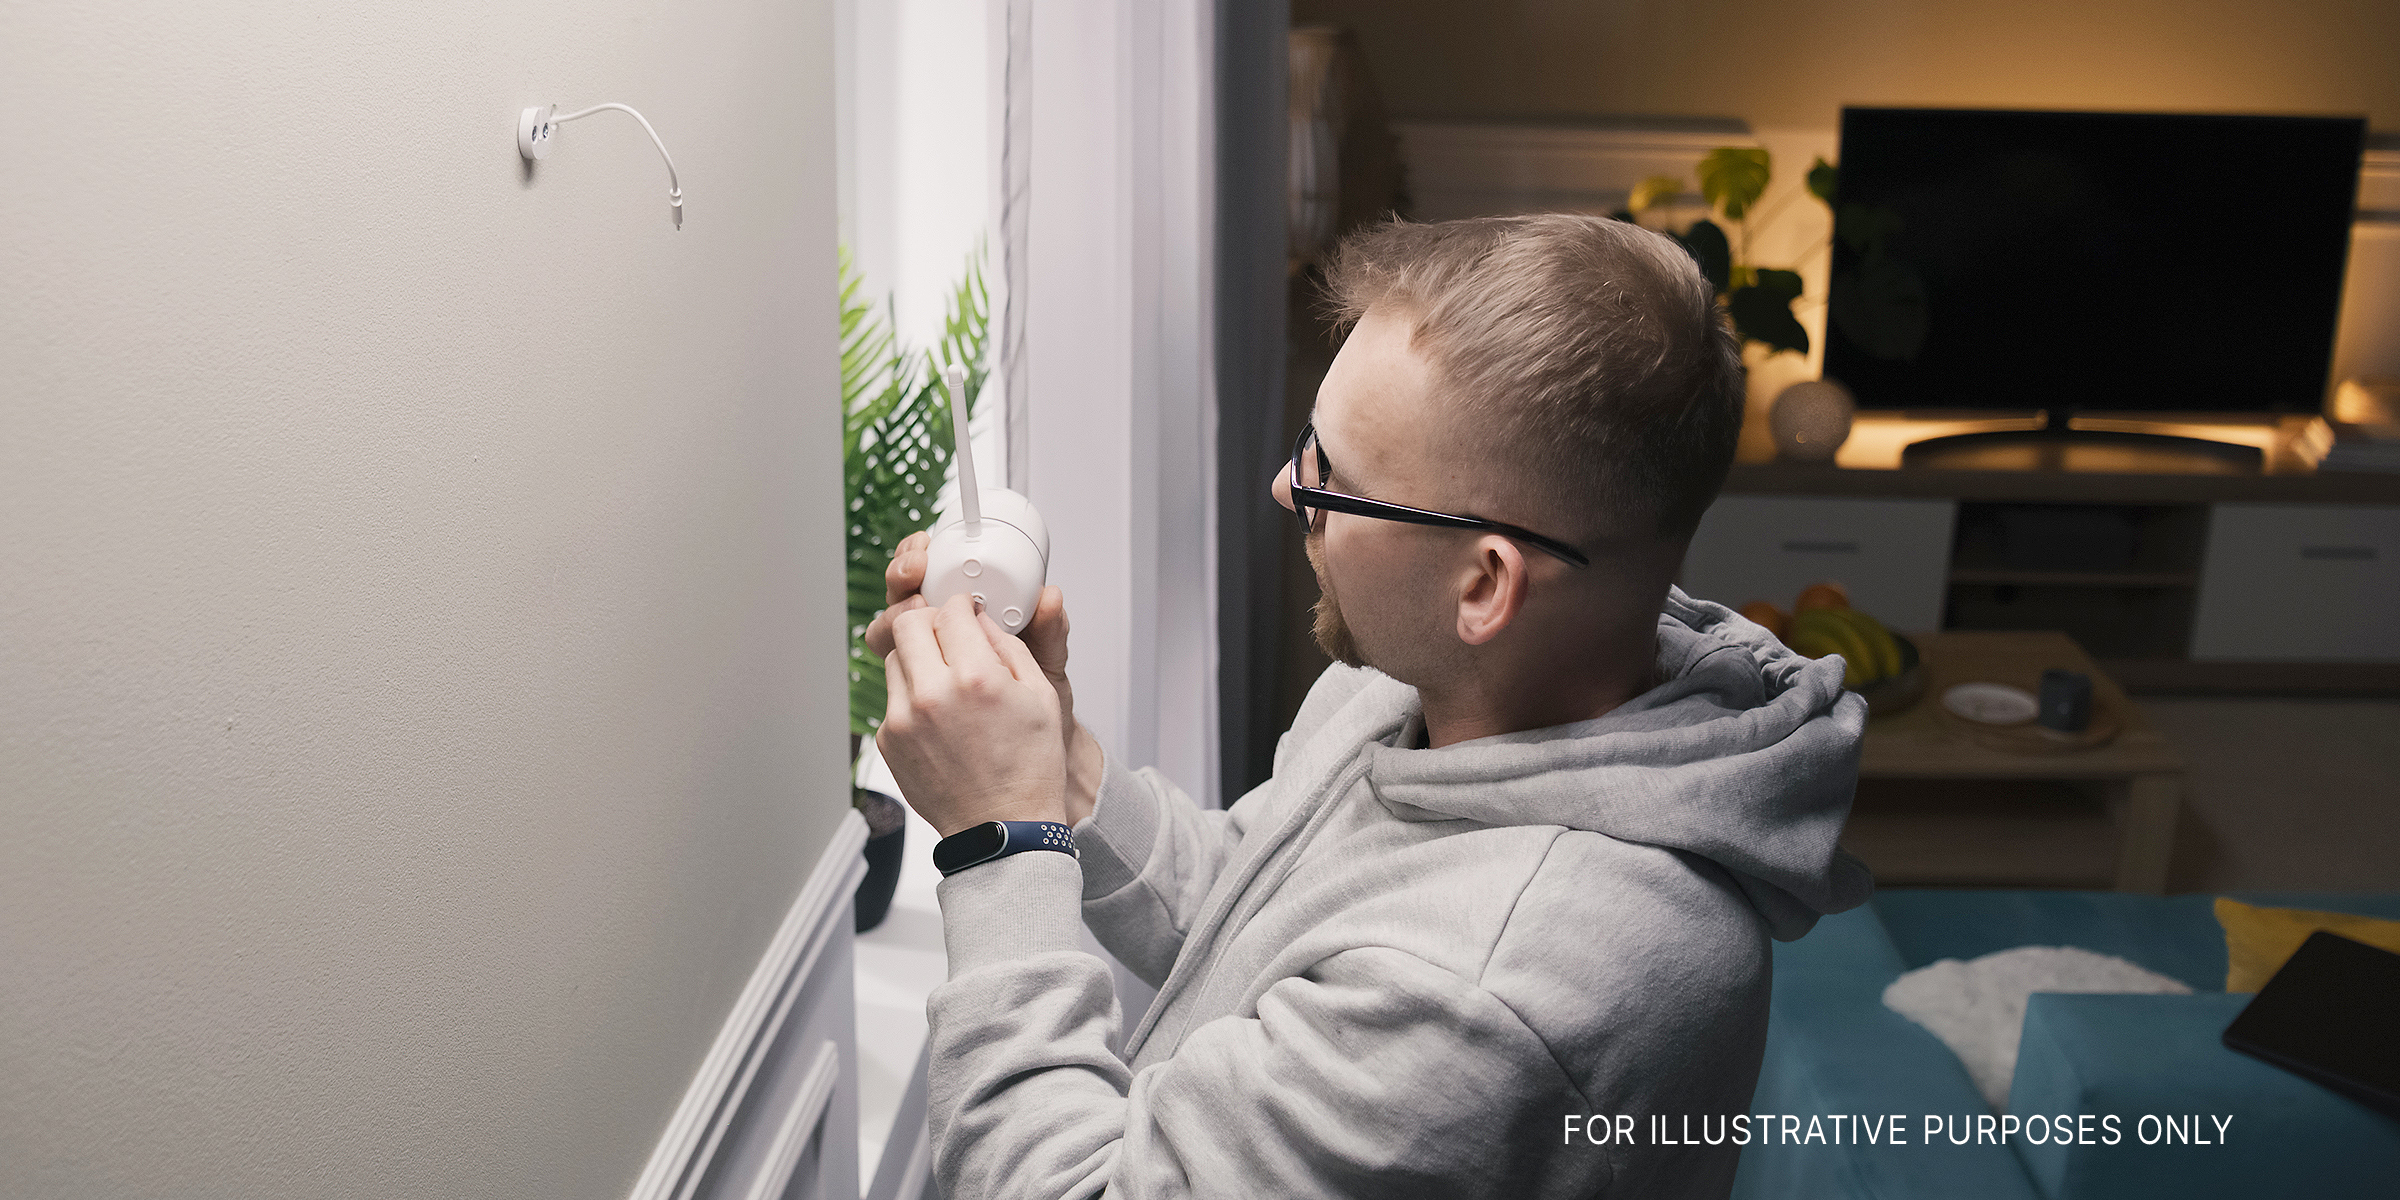 A man installing hidden cameras | Source: Shutterstock